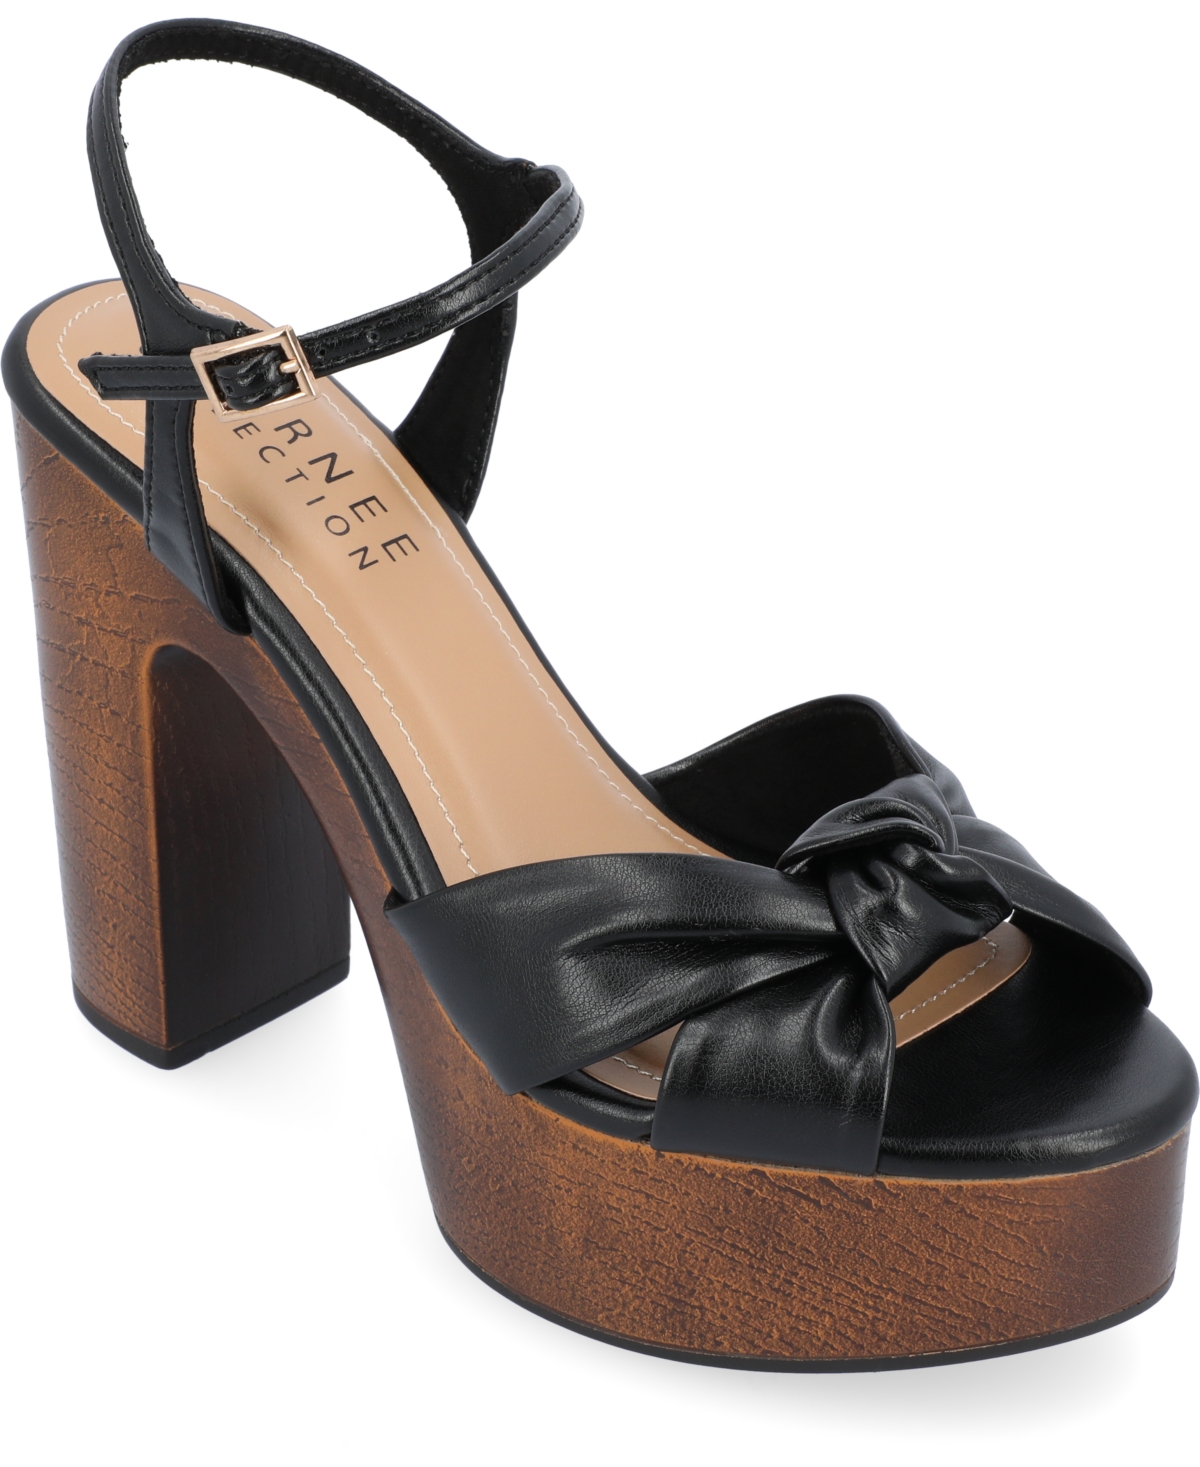 Women's Lorrica Platform Sandals - Taupe